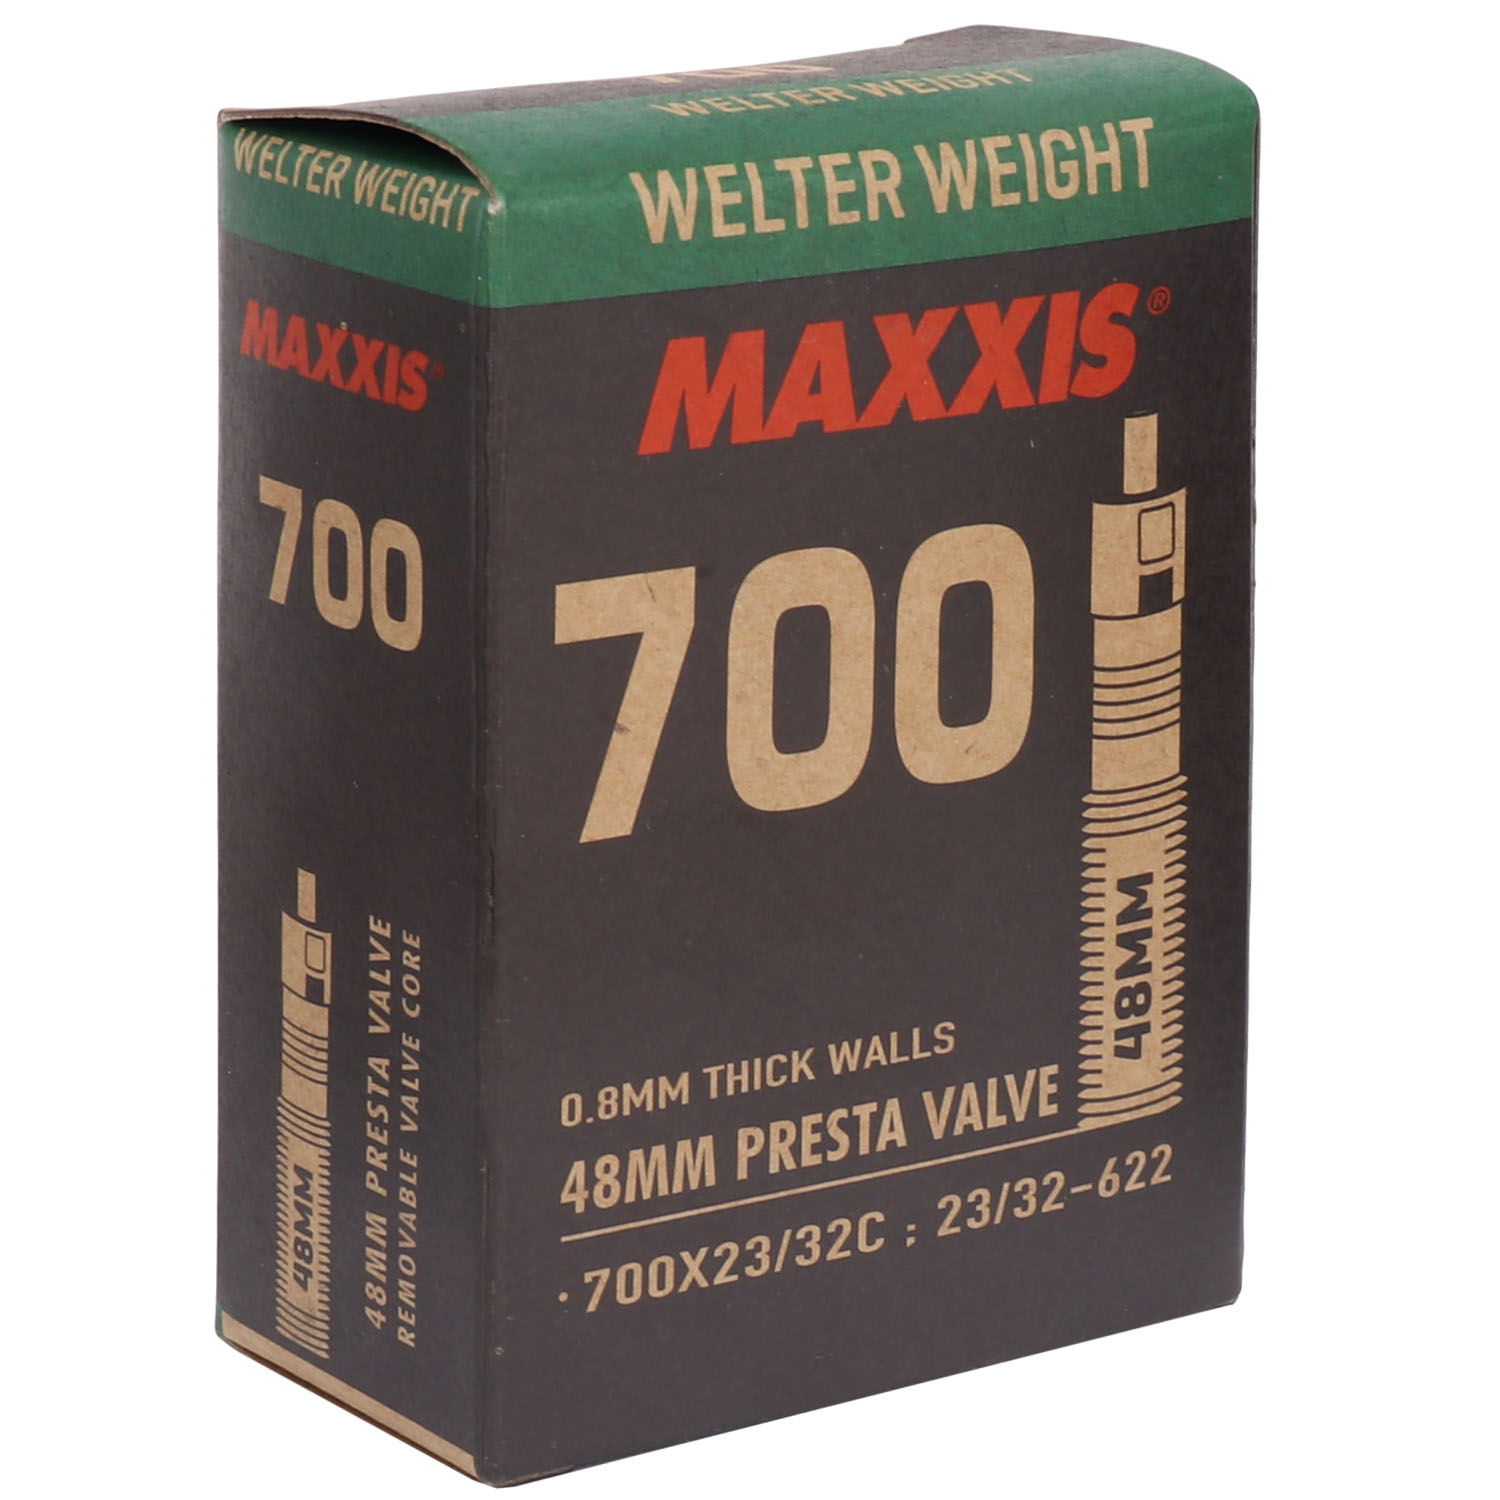 Produktbild von Maxxis WelterWeight Road Schlauch - 700x23/32C - Presta - 48mm